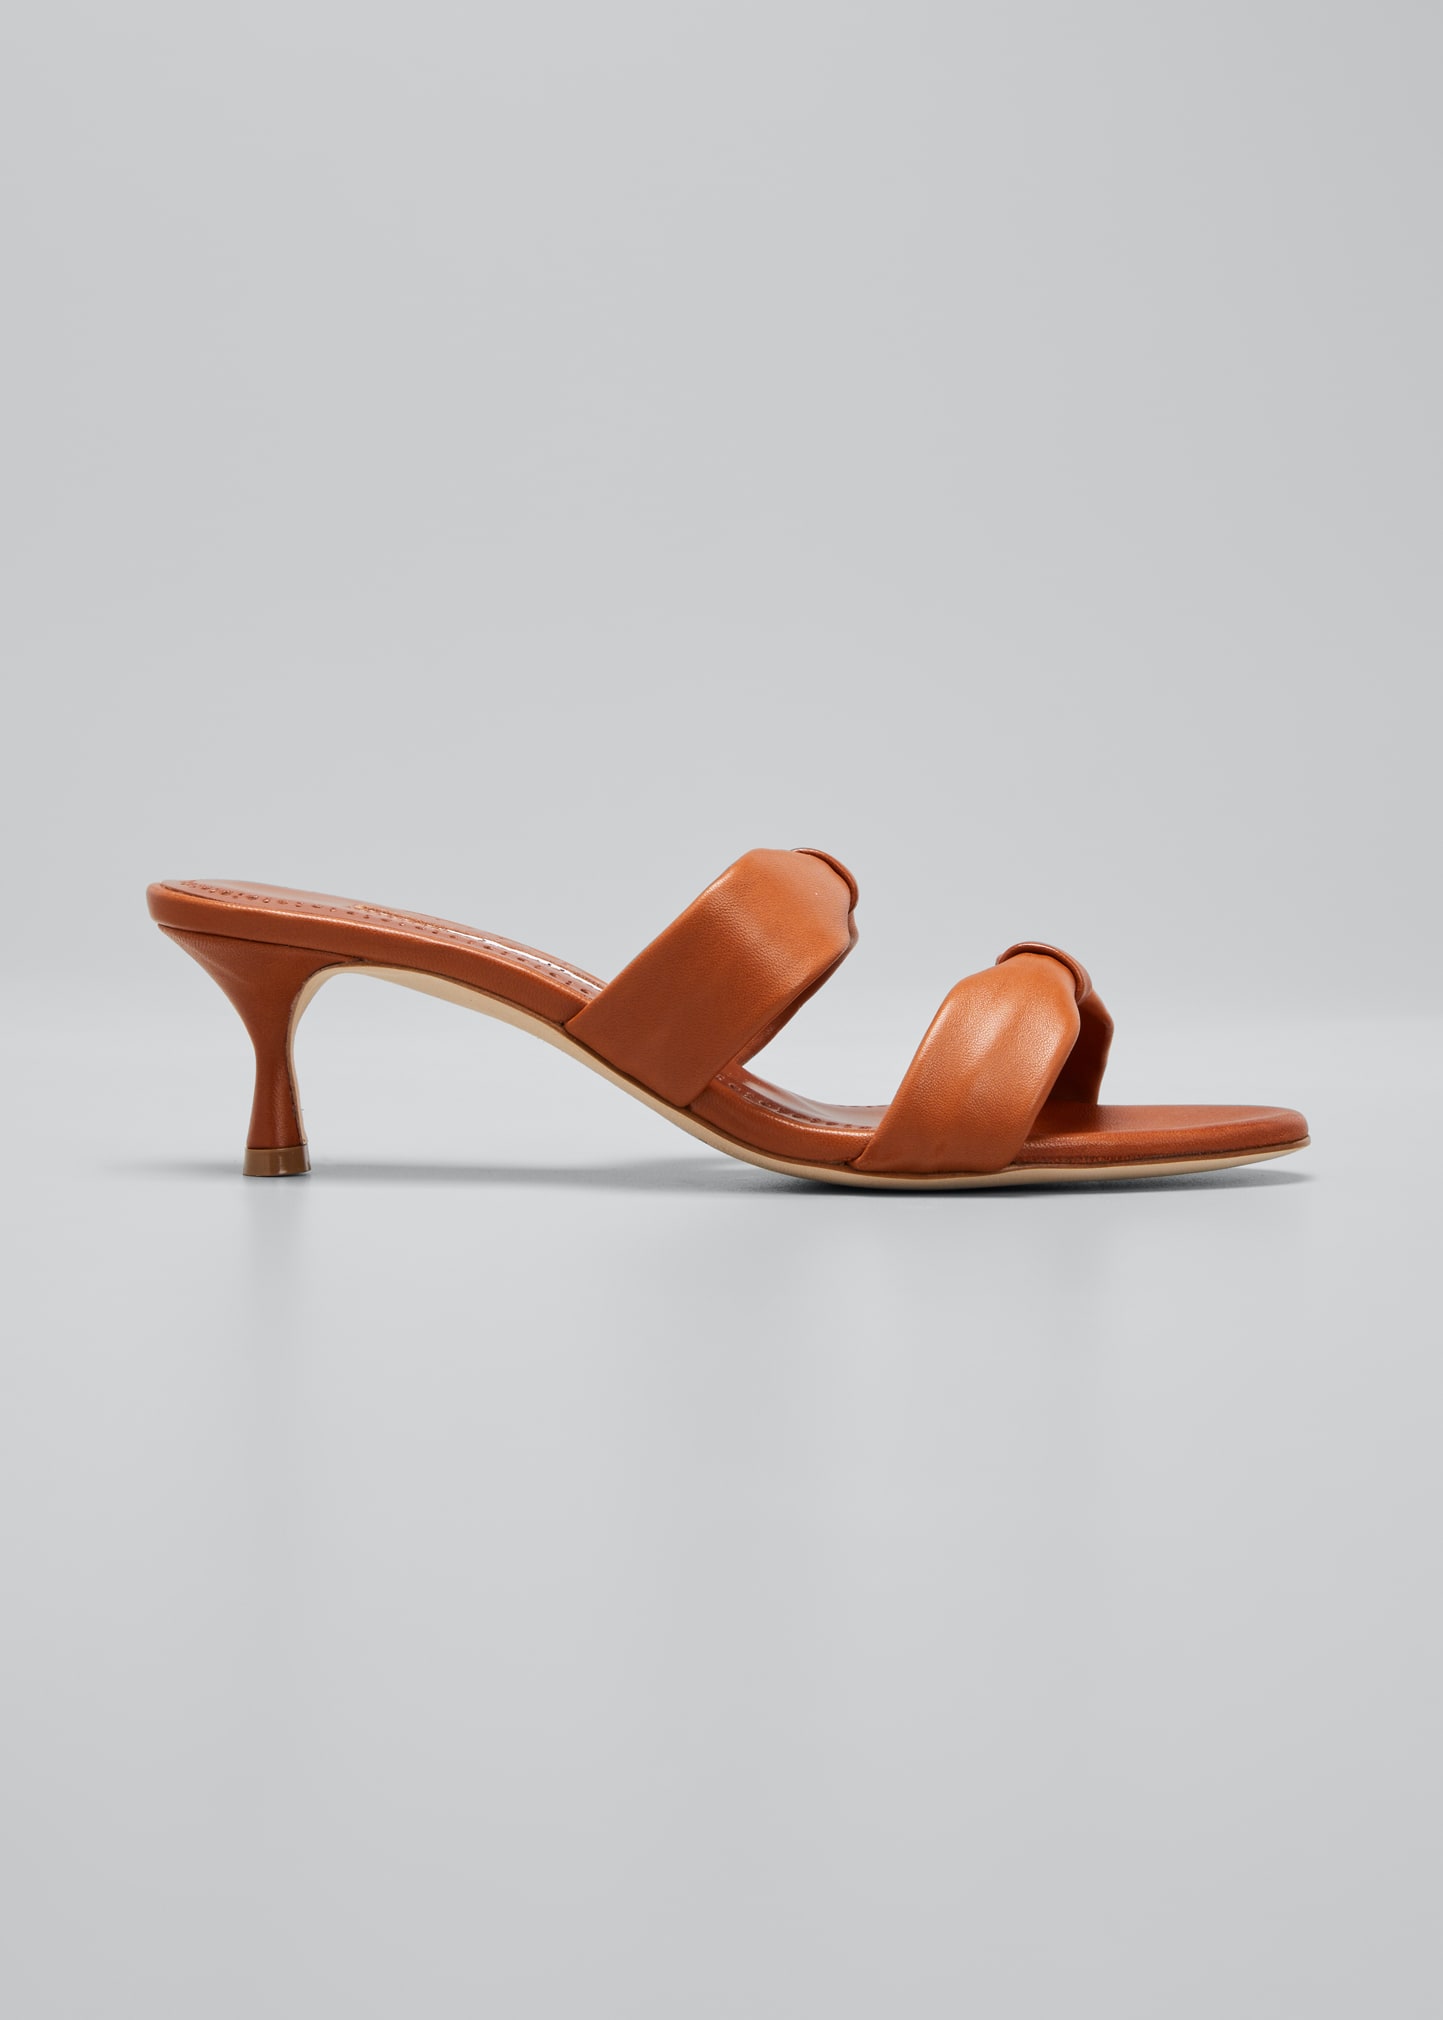 MANOLO BLAHNIK Slides for Women | ModeSens